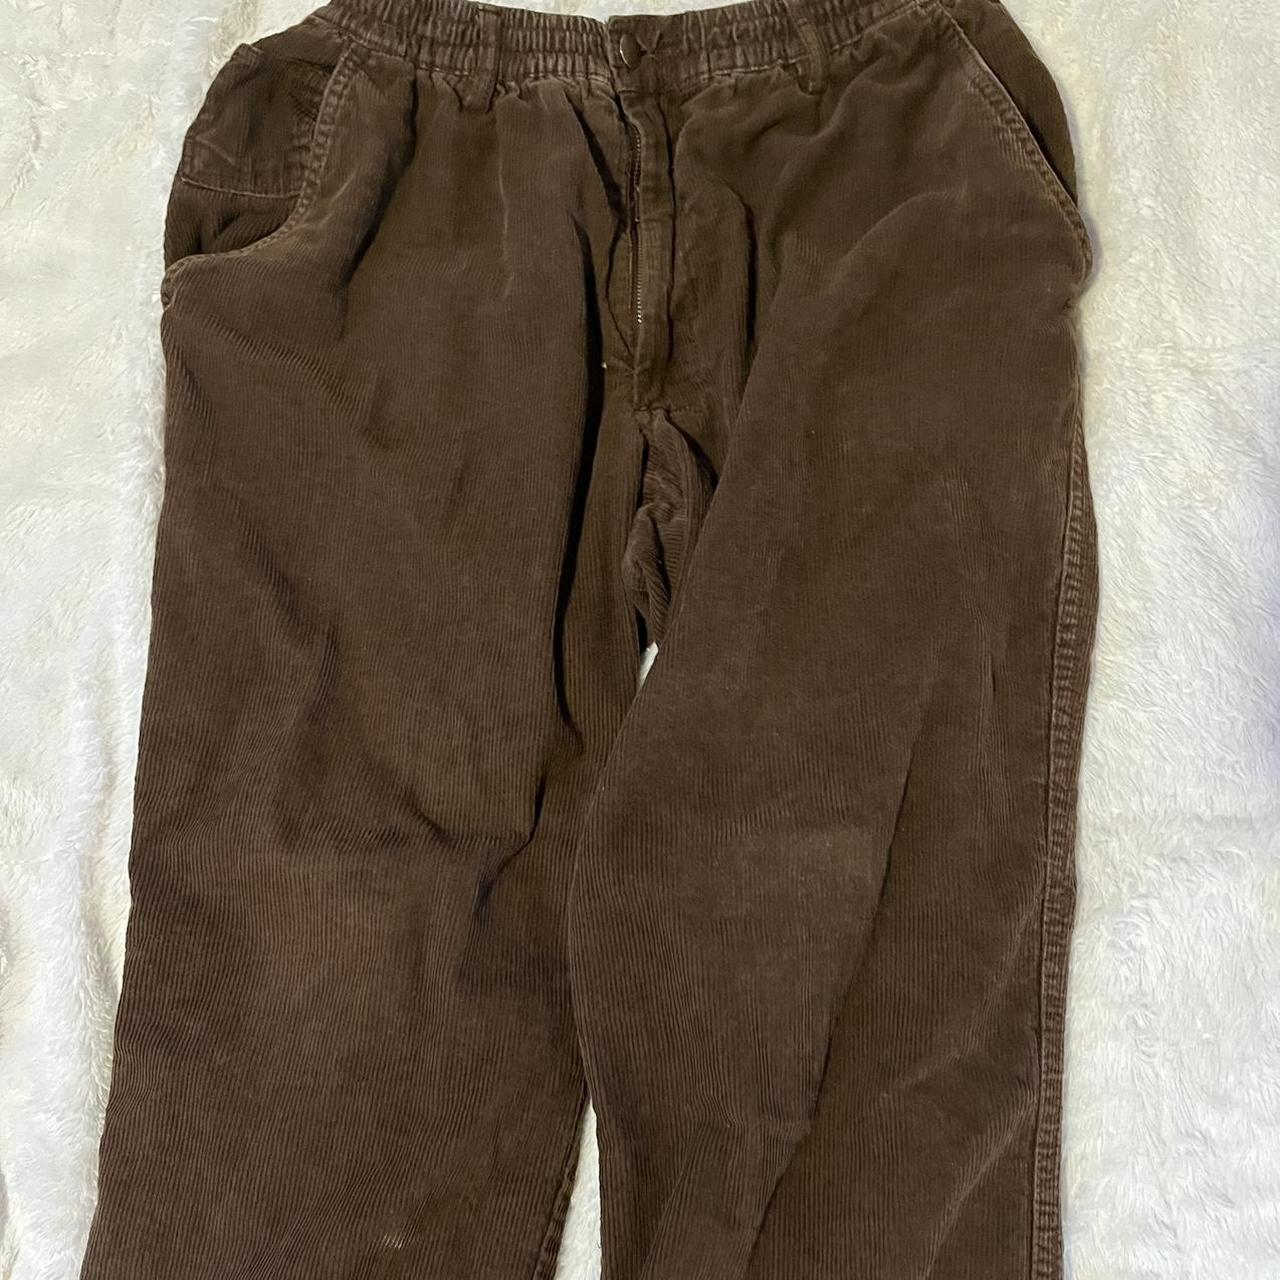 Antonio Melani Brown Corduroy Pants these were so - Depop